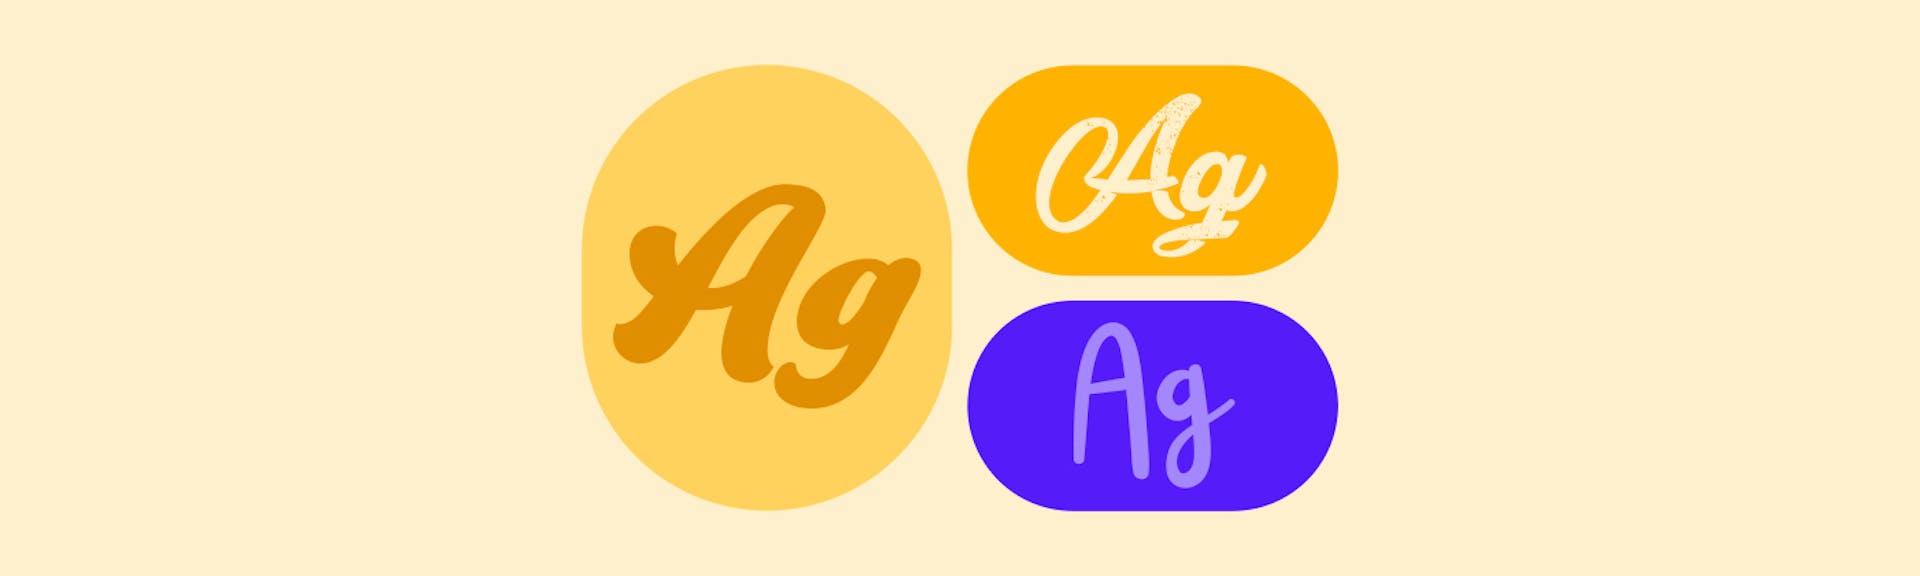 Estas son las 80 lettering fonts que le darán vida a tus diseños